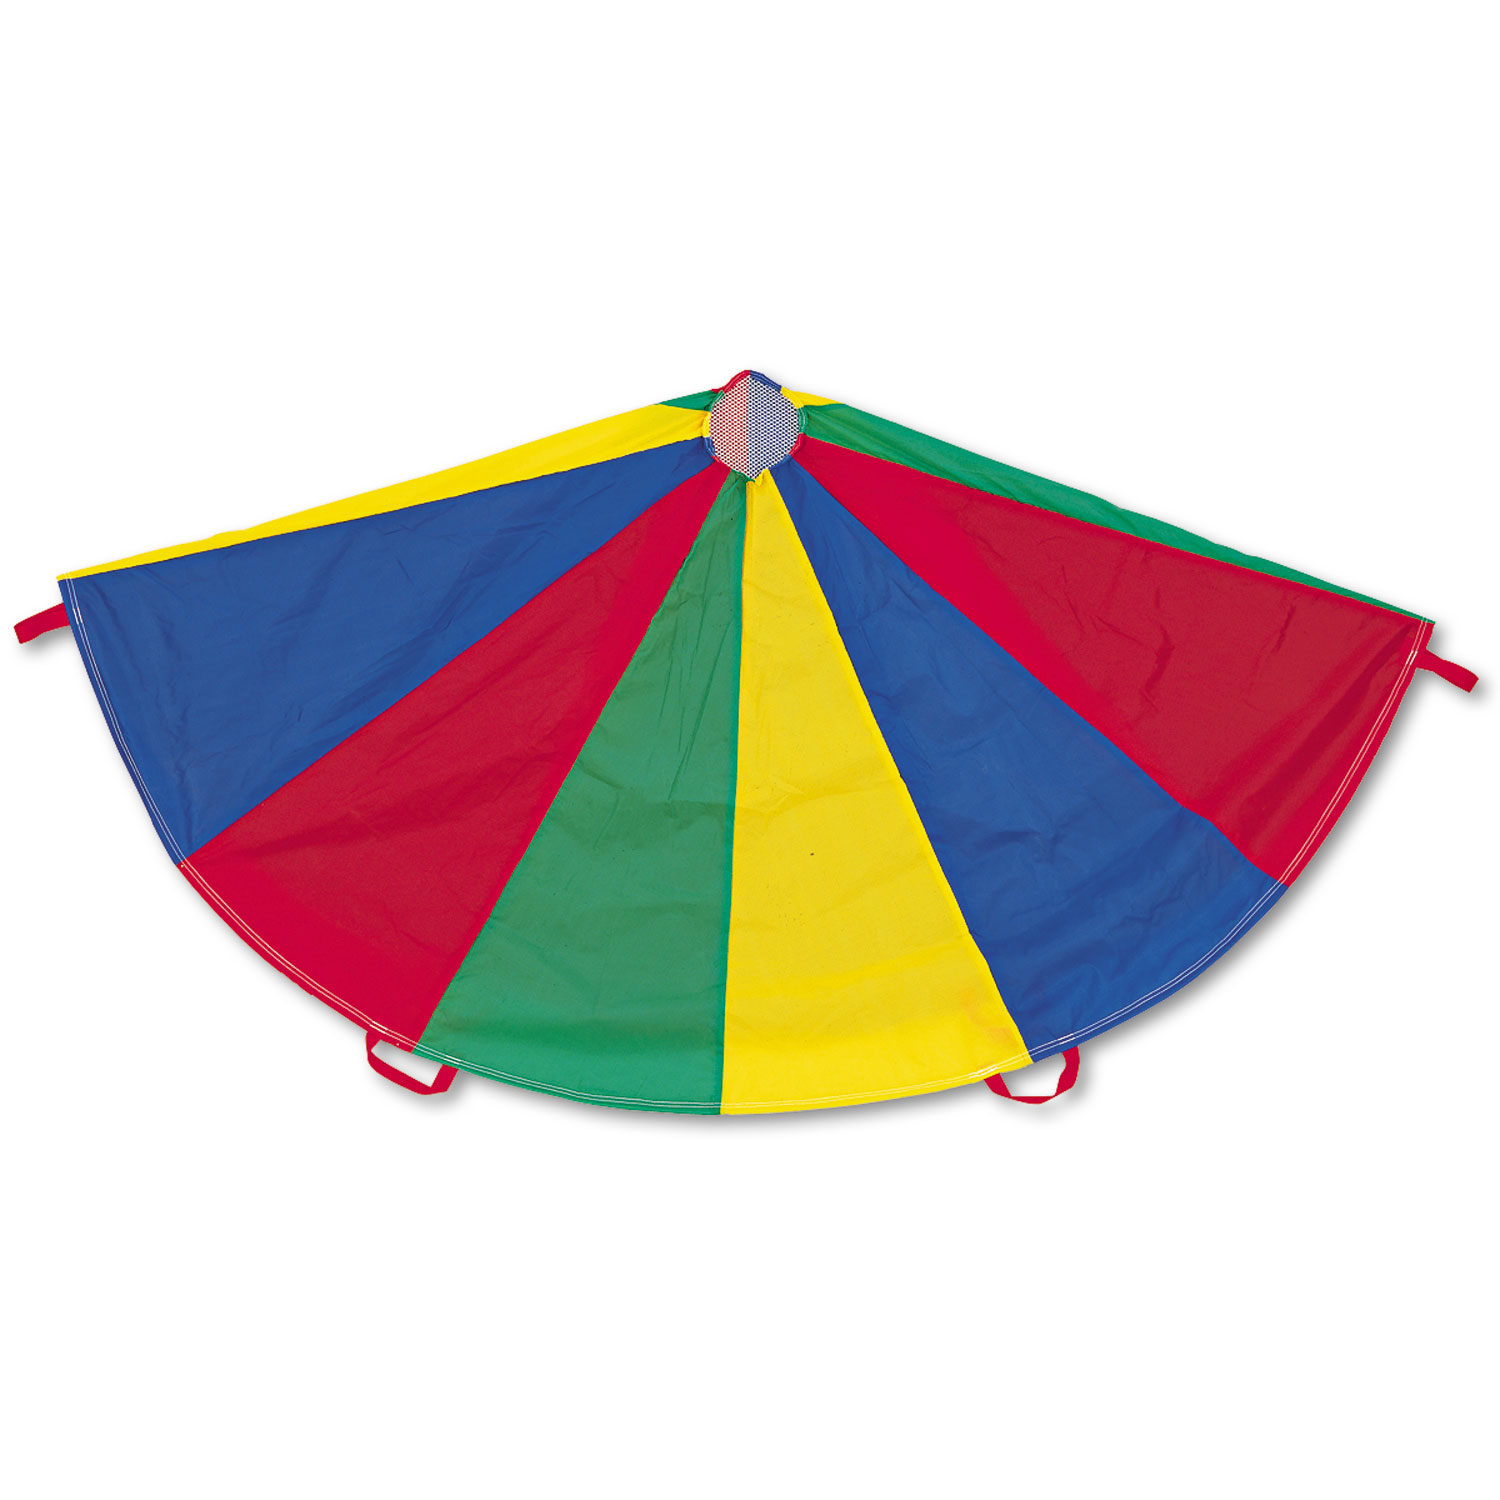  Champion Sports NP24 Nylon Multicolor Parachute, 24-ft. diameter, 20 Handles (CSINP24) 